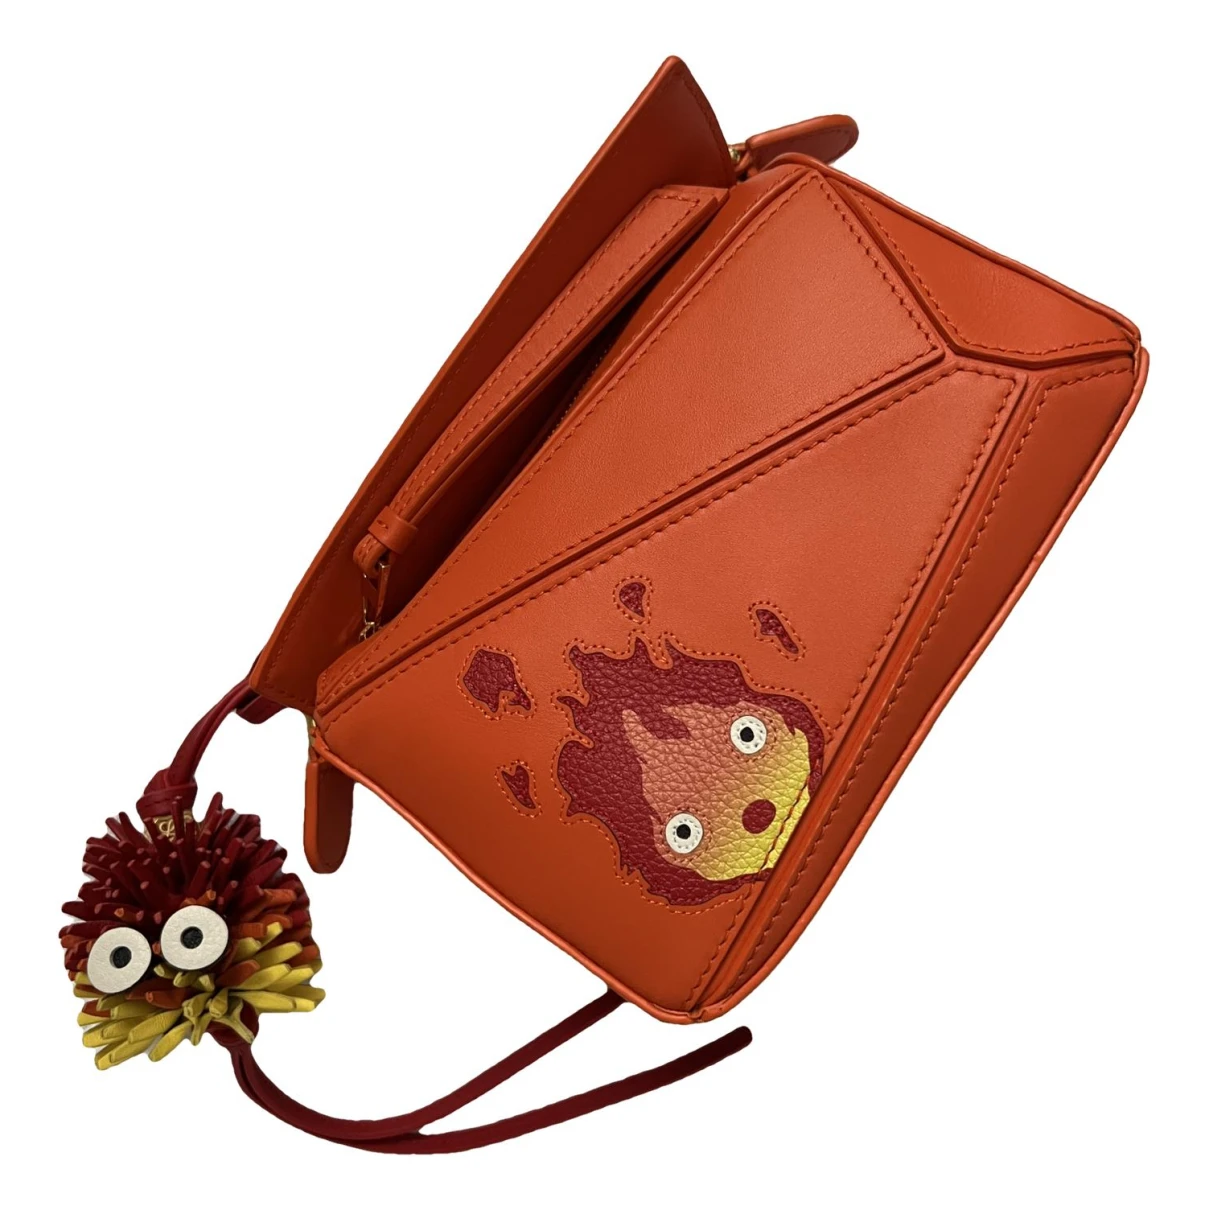 Pre-owned Loewe Studio Ghibli Leather Handbag In Orange